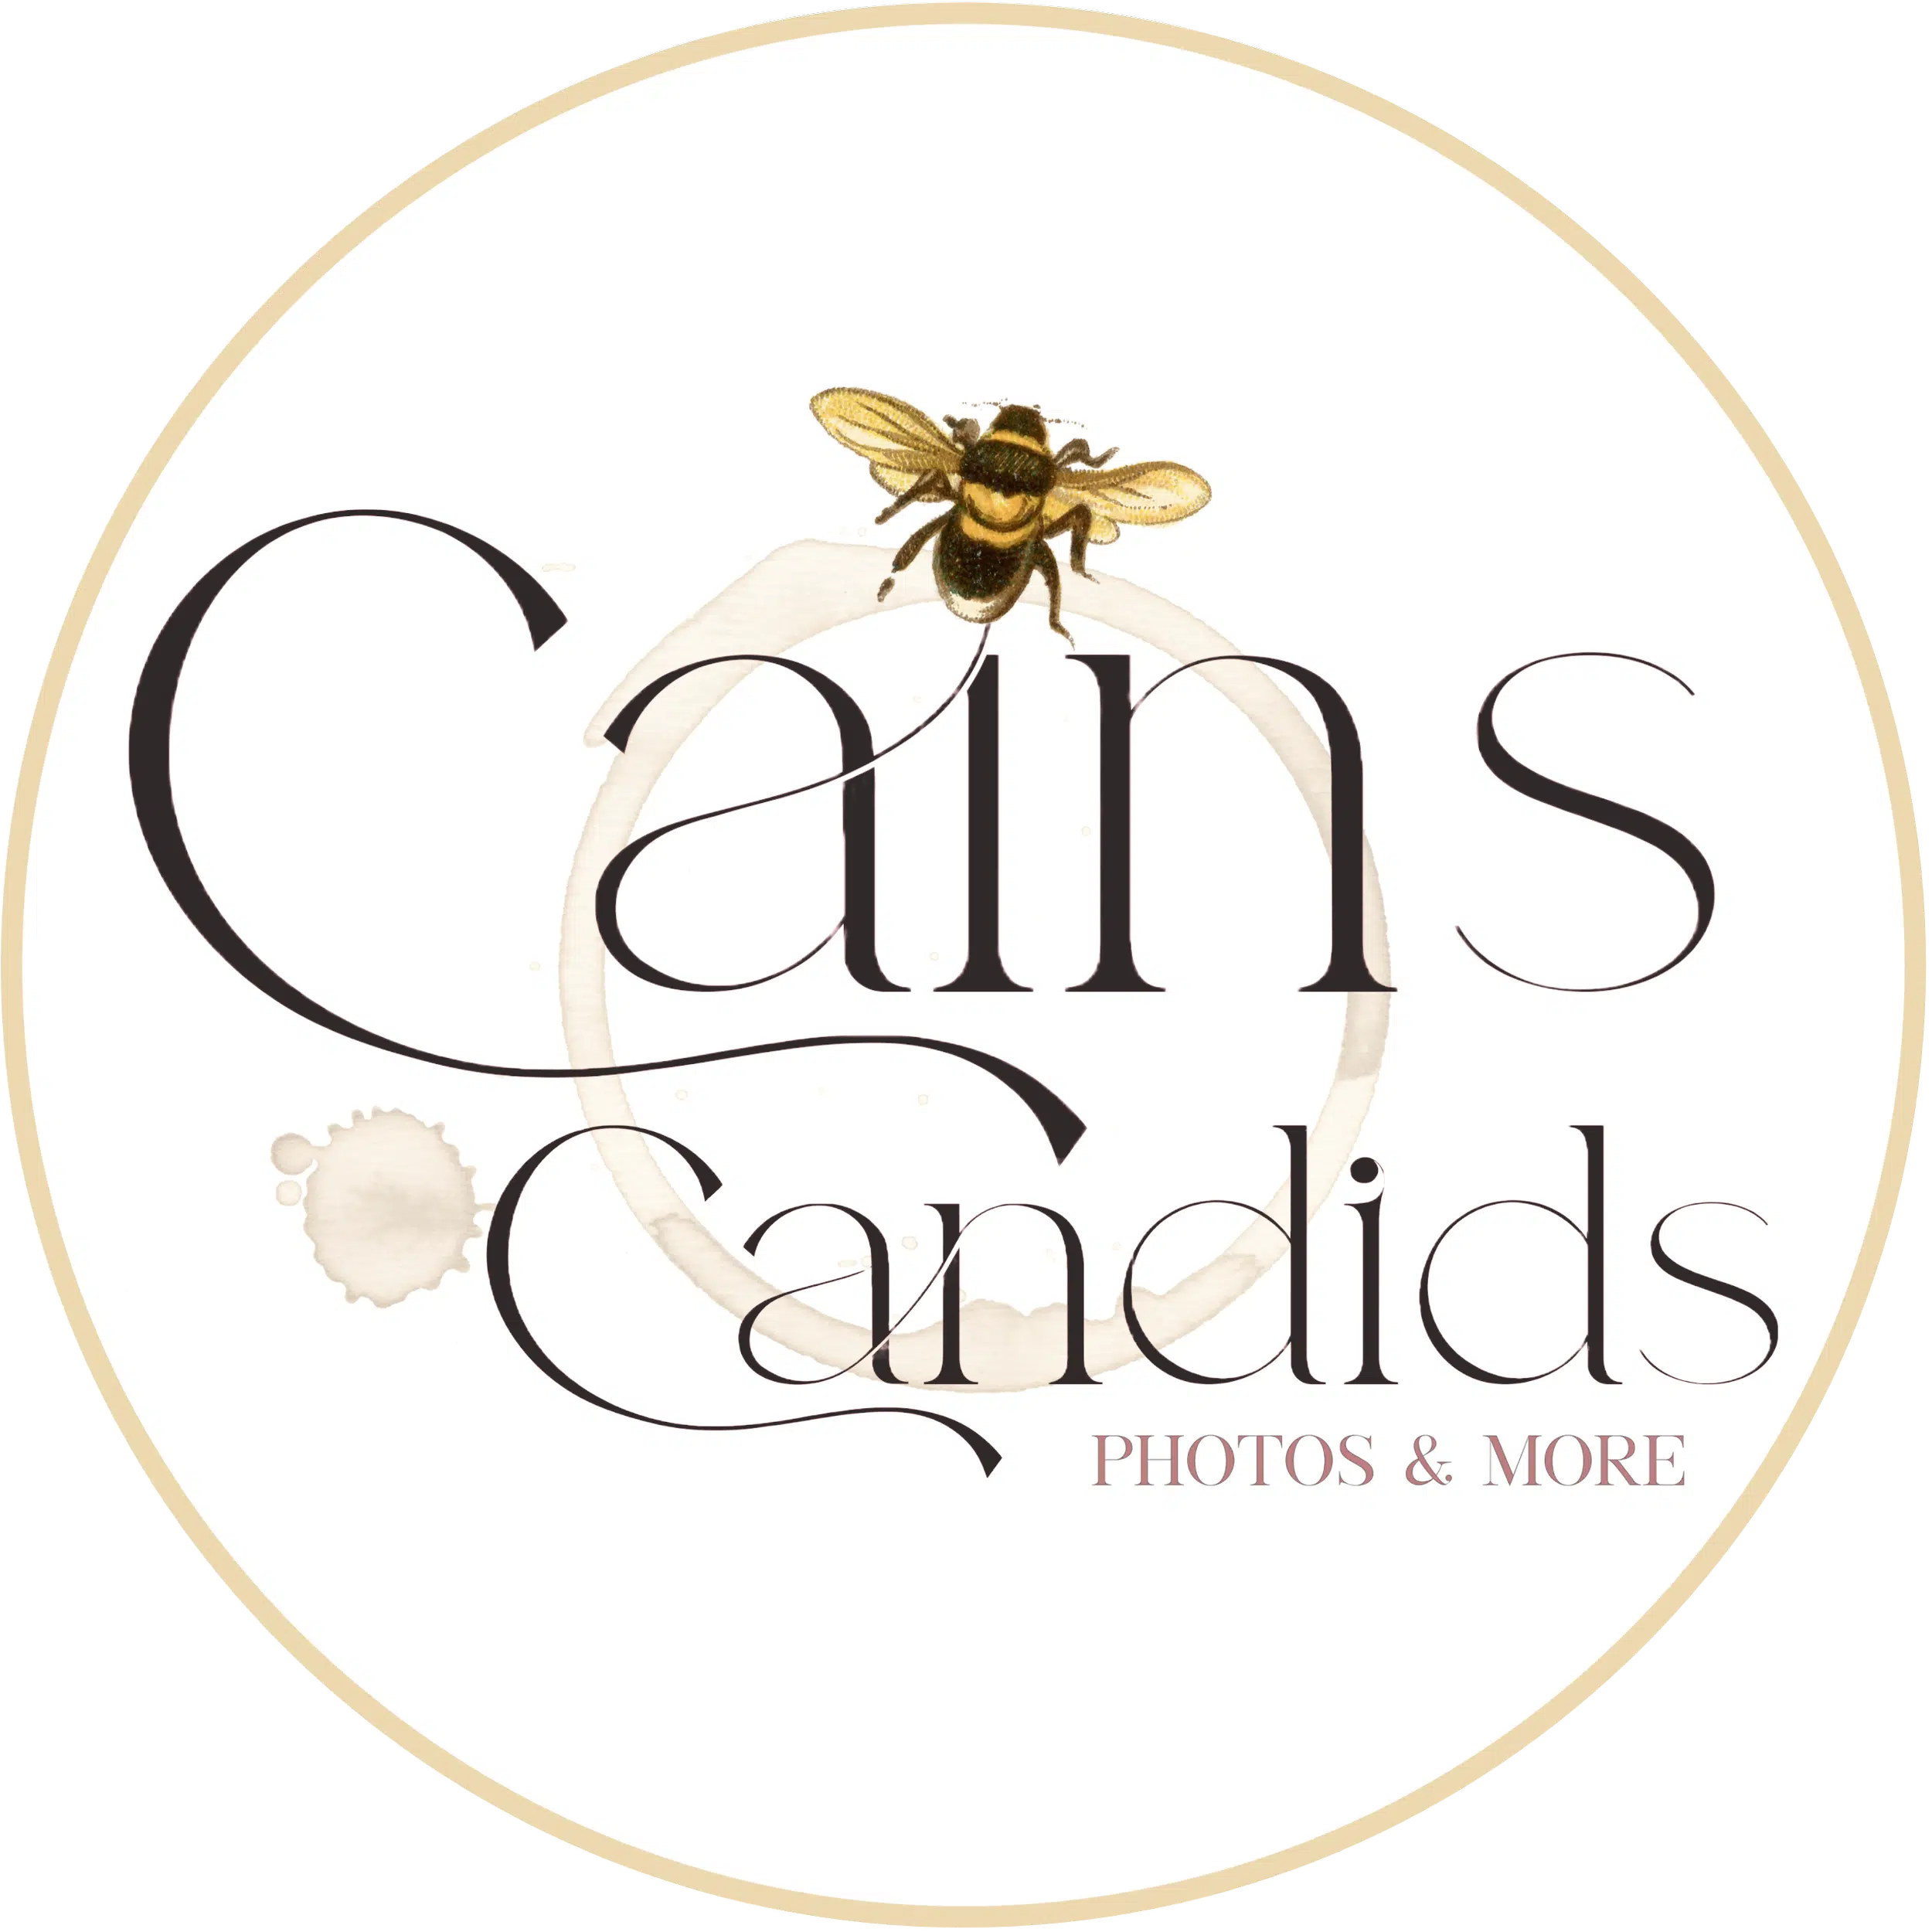 Cain's Candids Website Maintenance